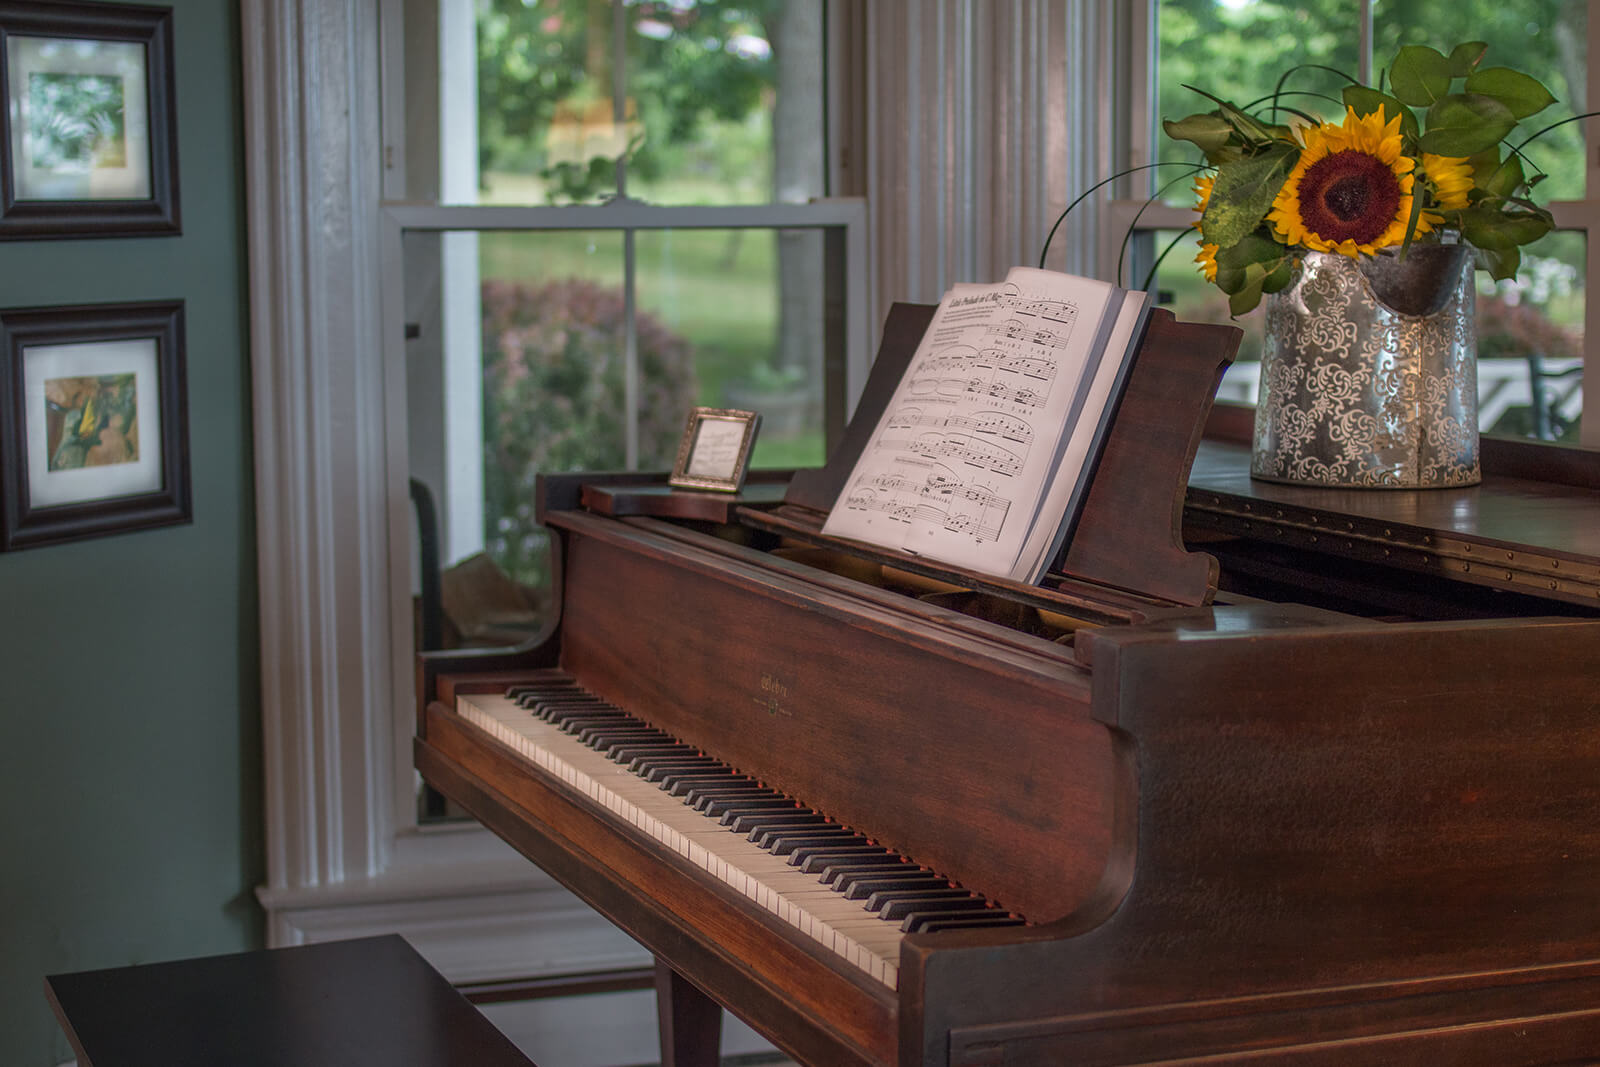 Piano, Magnolia Place Bed & Breakfast, Finger Lakes, NY